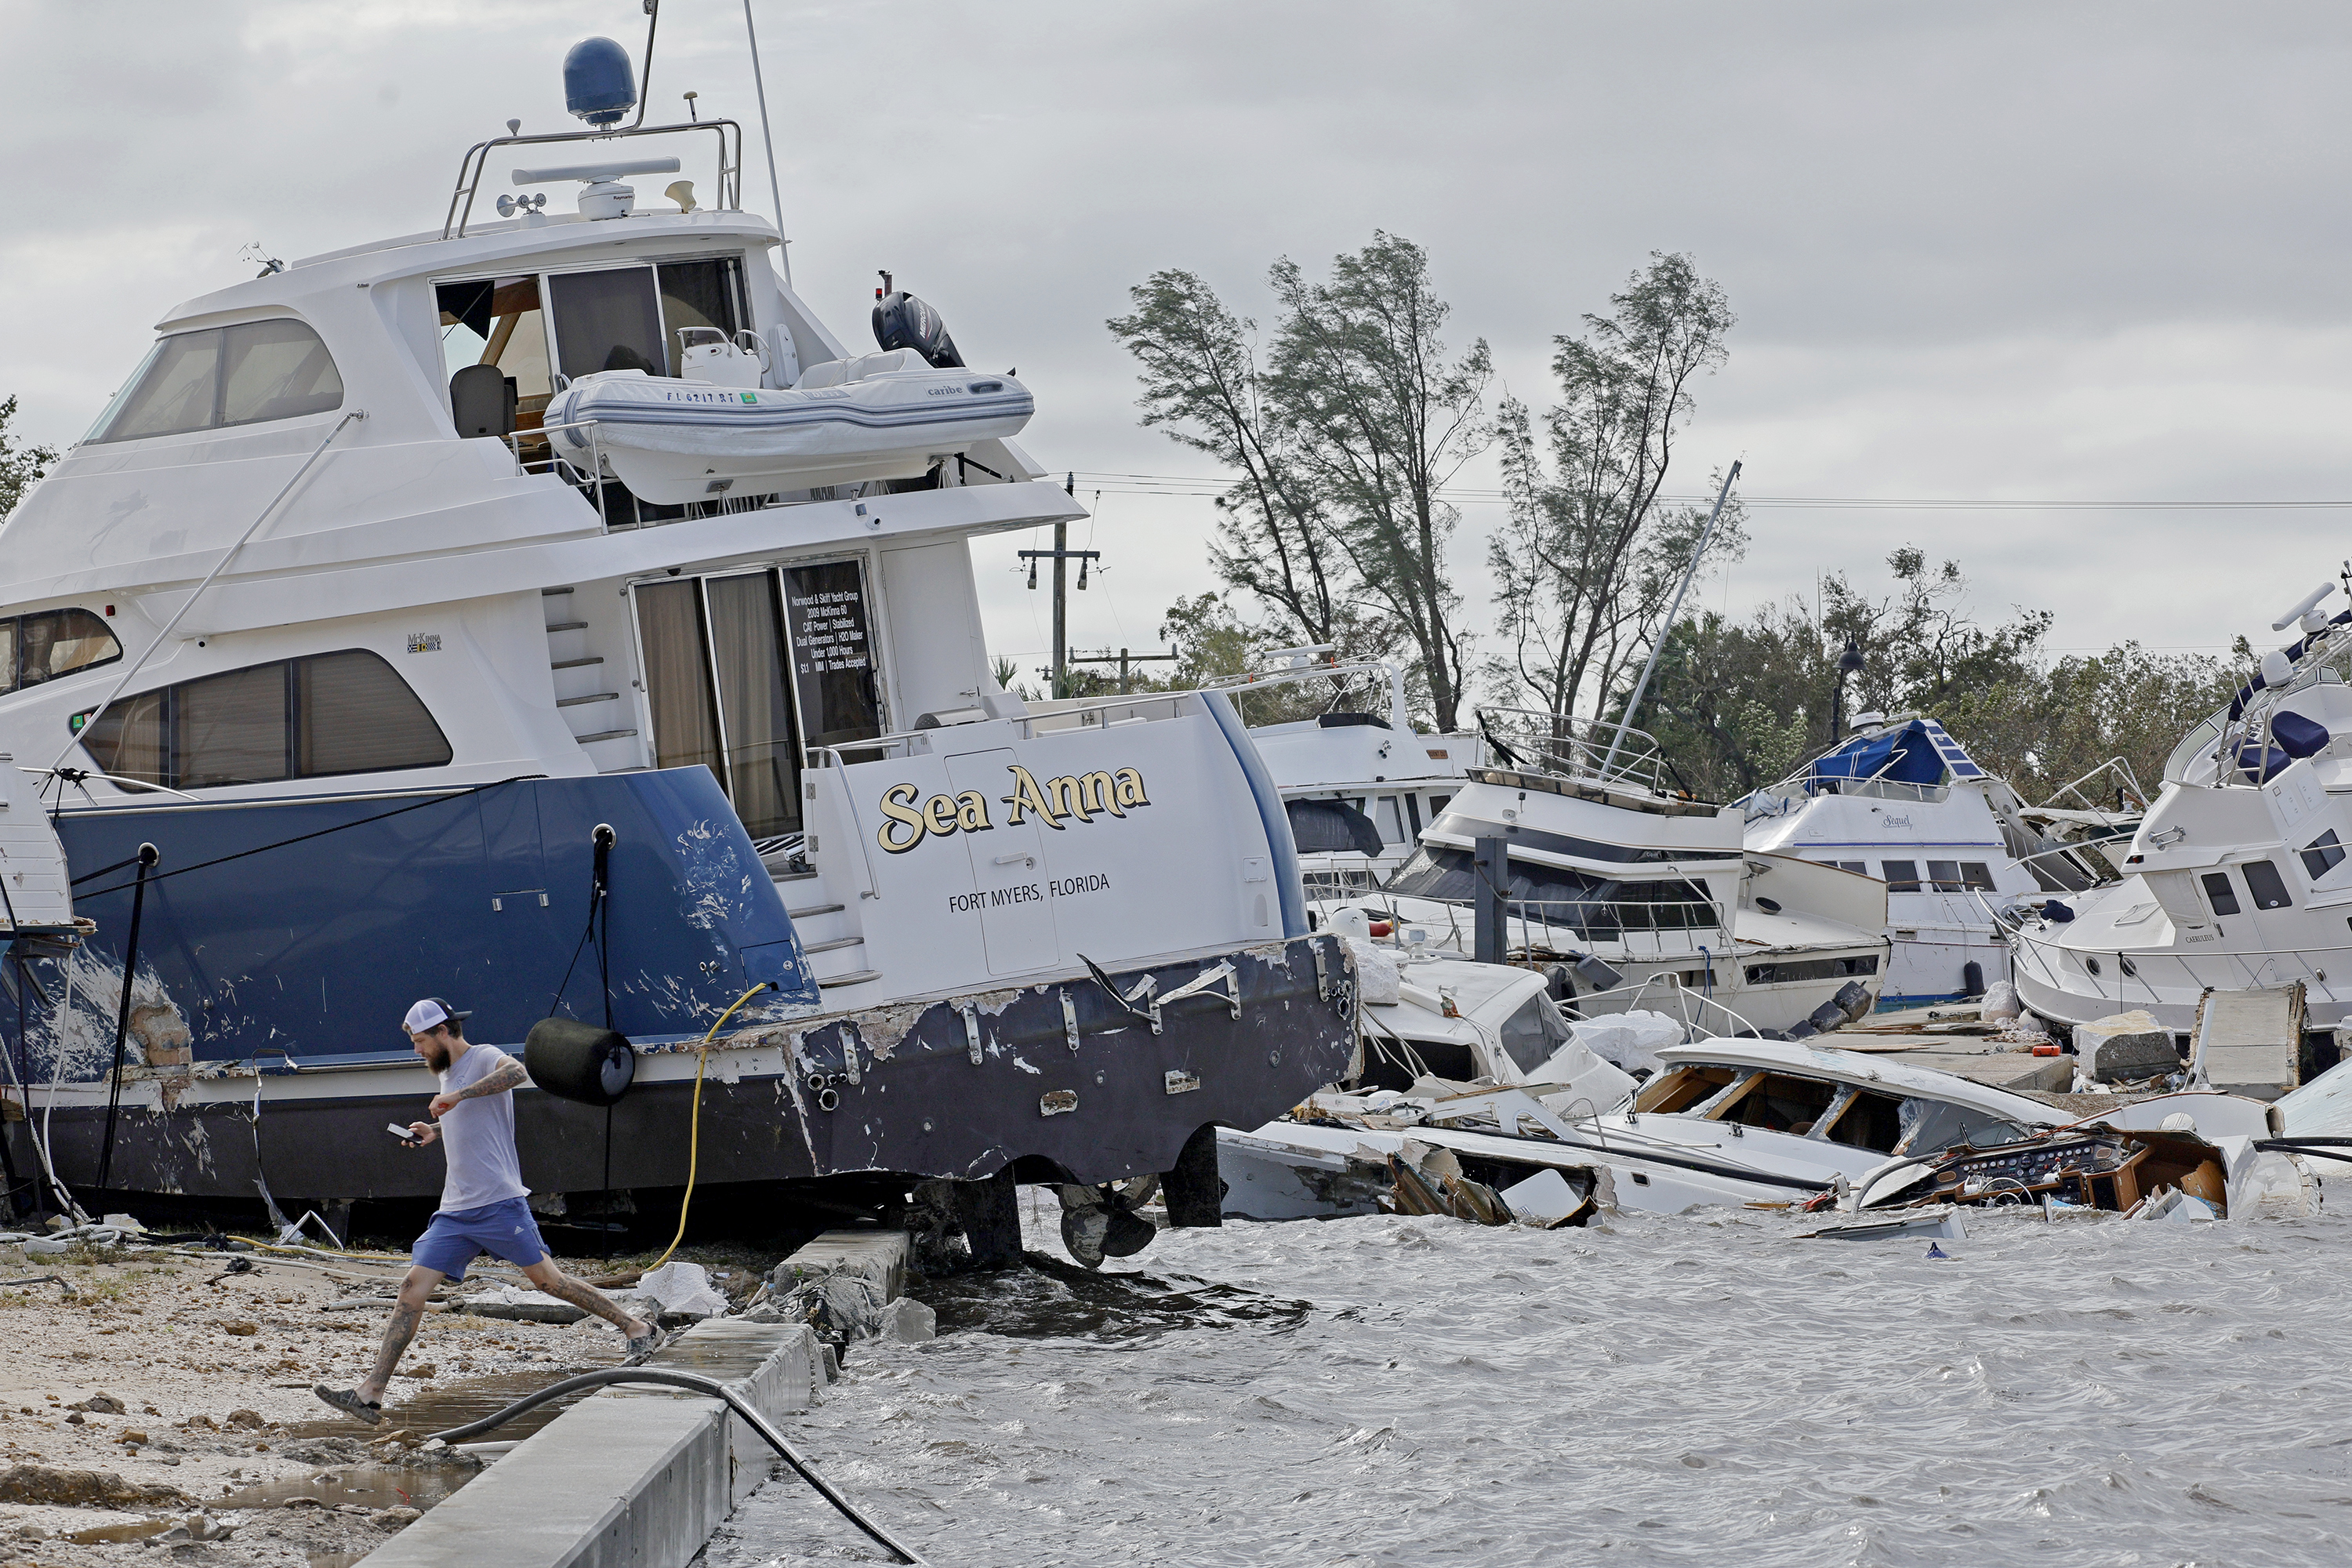 Joe Dalton, de vacaciones desde Cleveland, Ohio, revisa los botes varados en Fort Myers Wharf, a lo largo del río Caloosahatchee, el jueves 29 de septiembre de 2022 en Fort Myers, Florida, luego del huracán Ian. (Amy Beth Bennett/South Florida Sun-Sentinel via AP)